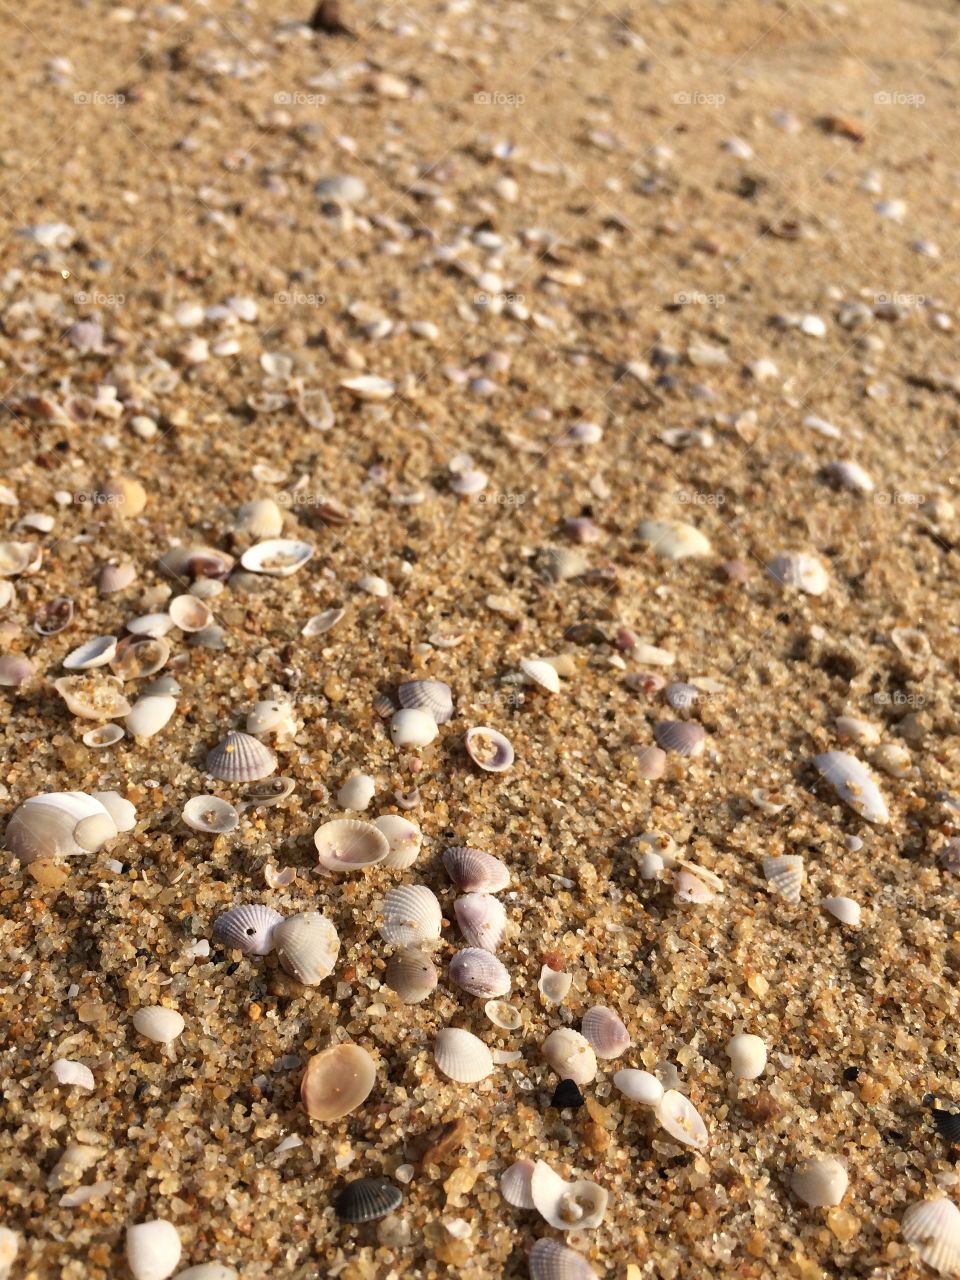 Shells on beach sand 
